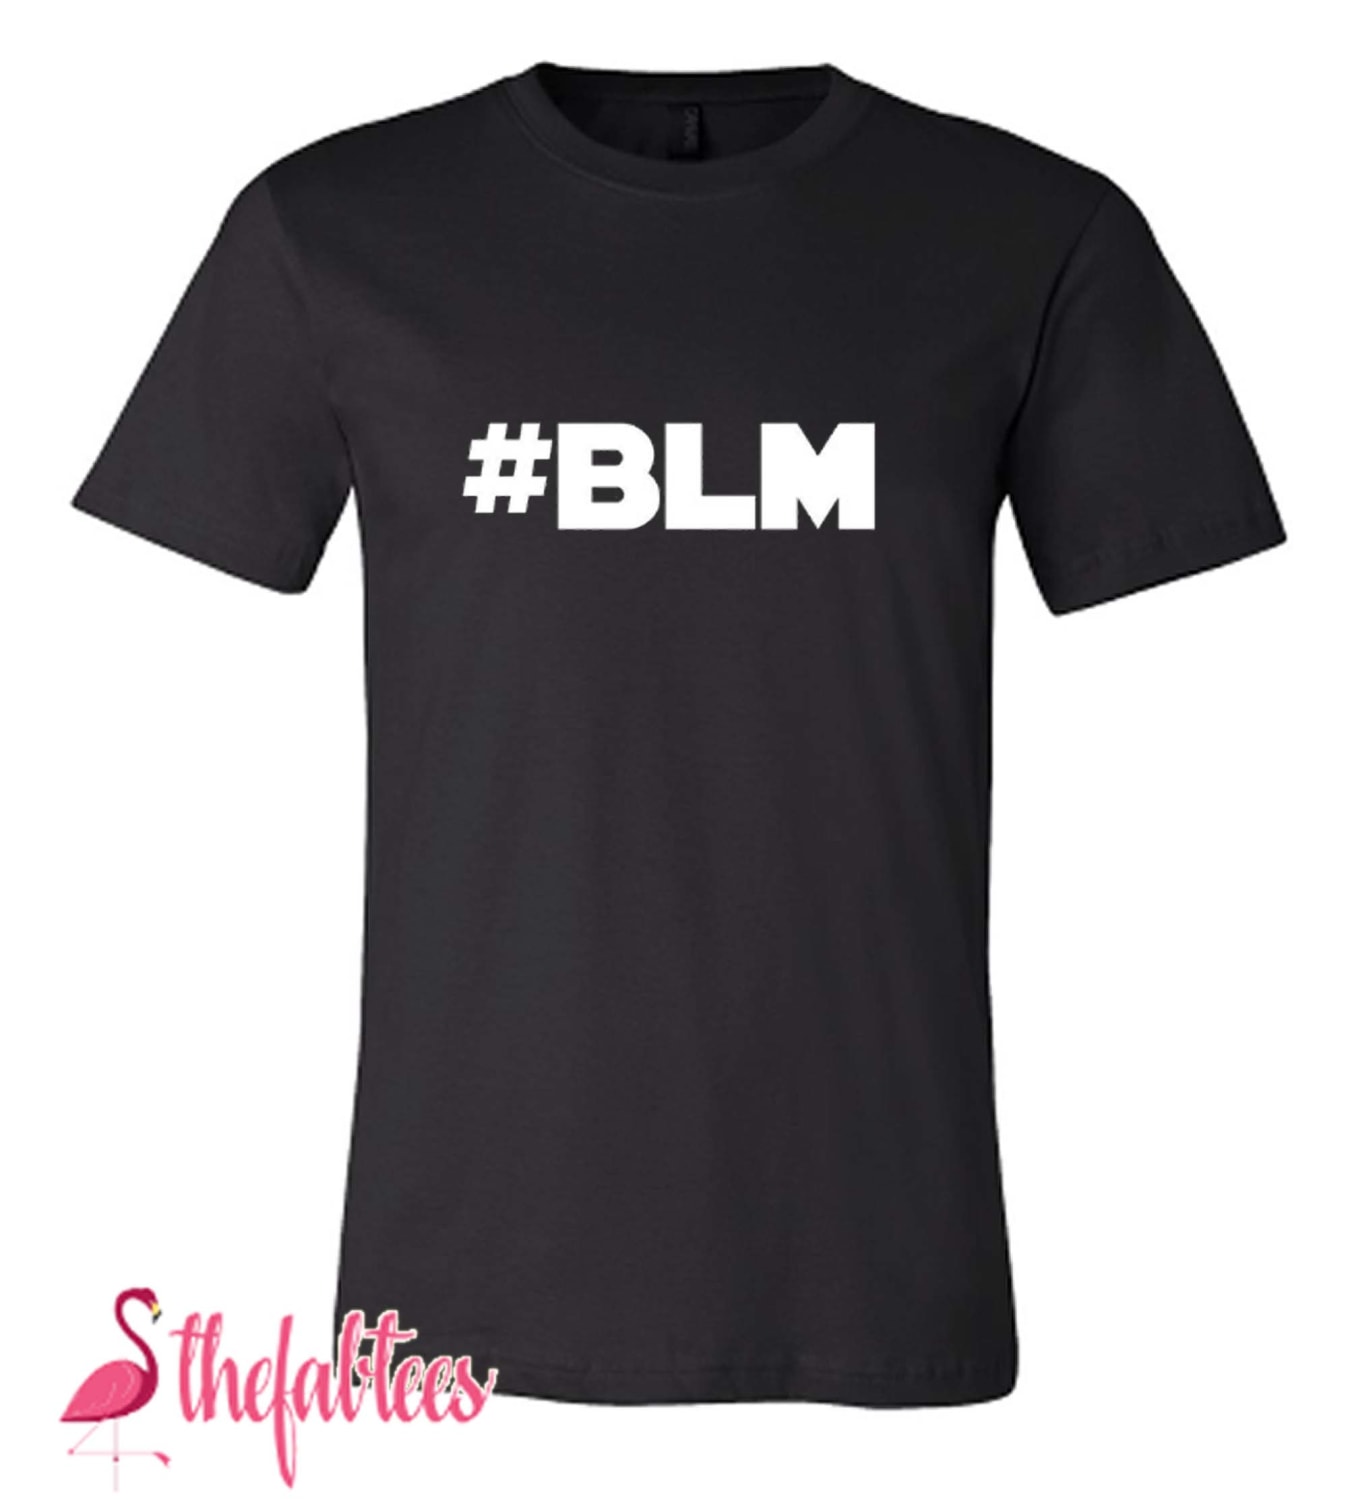 Black Lives Hashtag Fabulous T Shirt